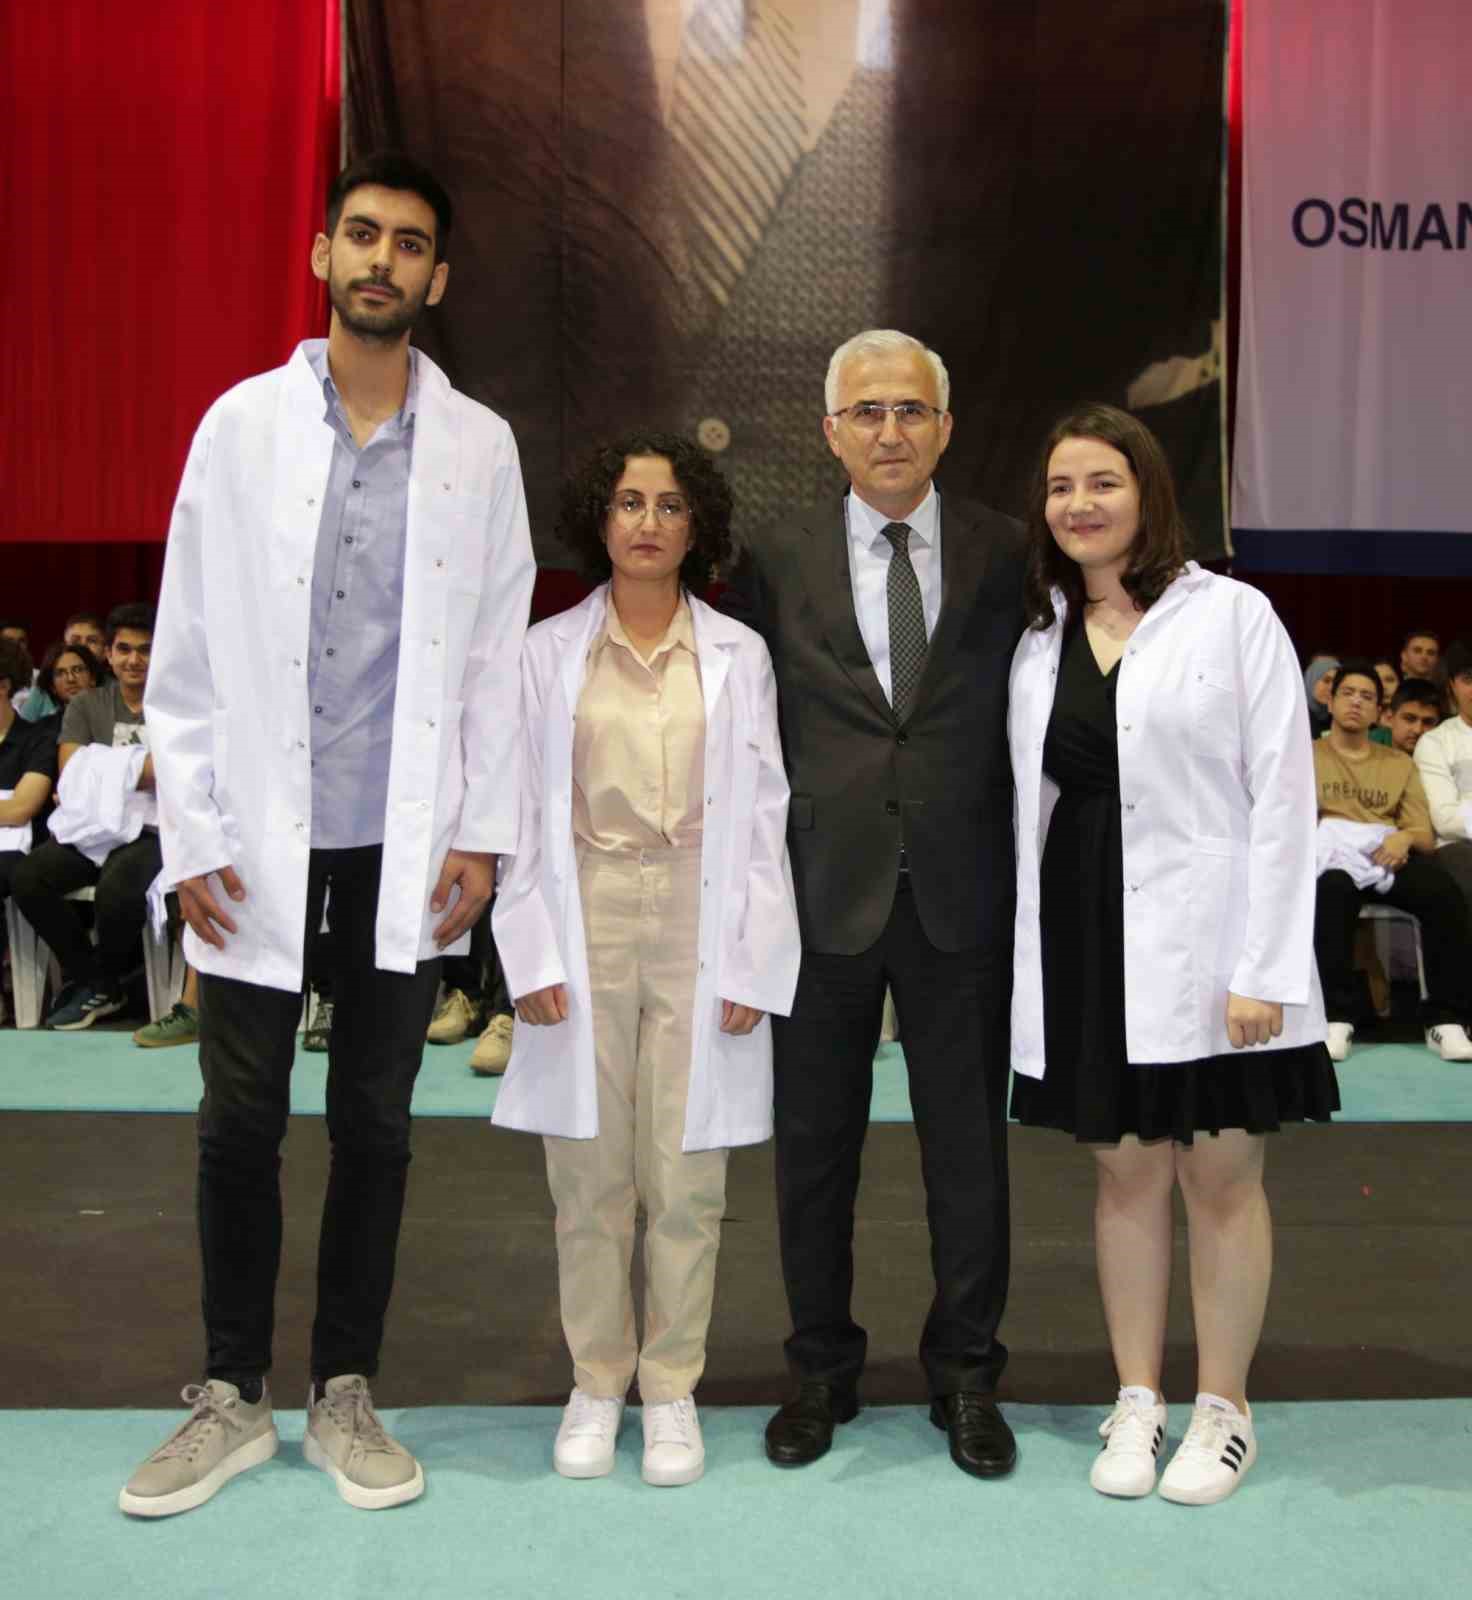 ESOGÜ Tıp Fakültesi’nin yeni öğrencileri beyaz önlüklerini giydi